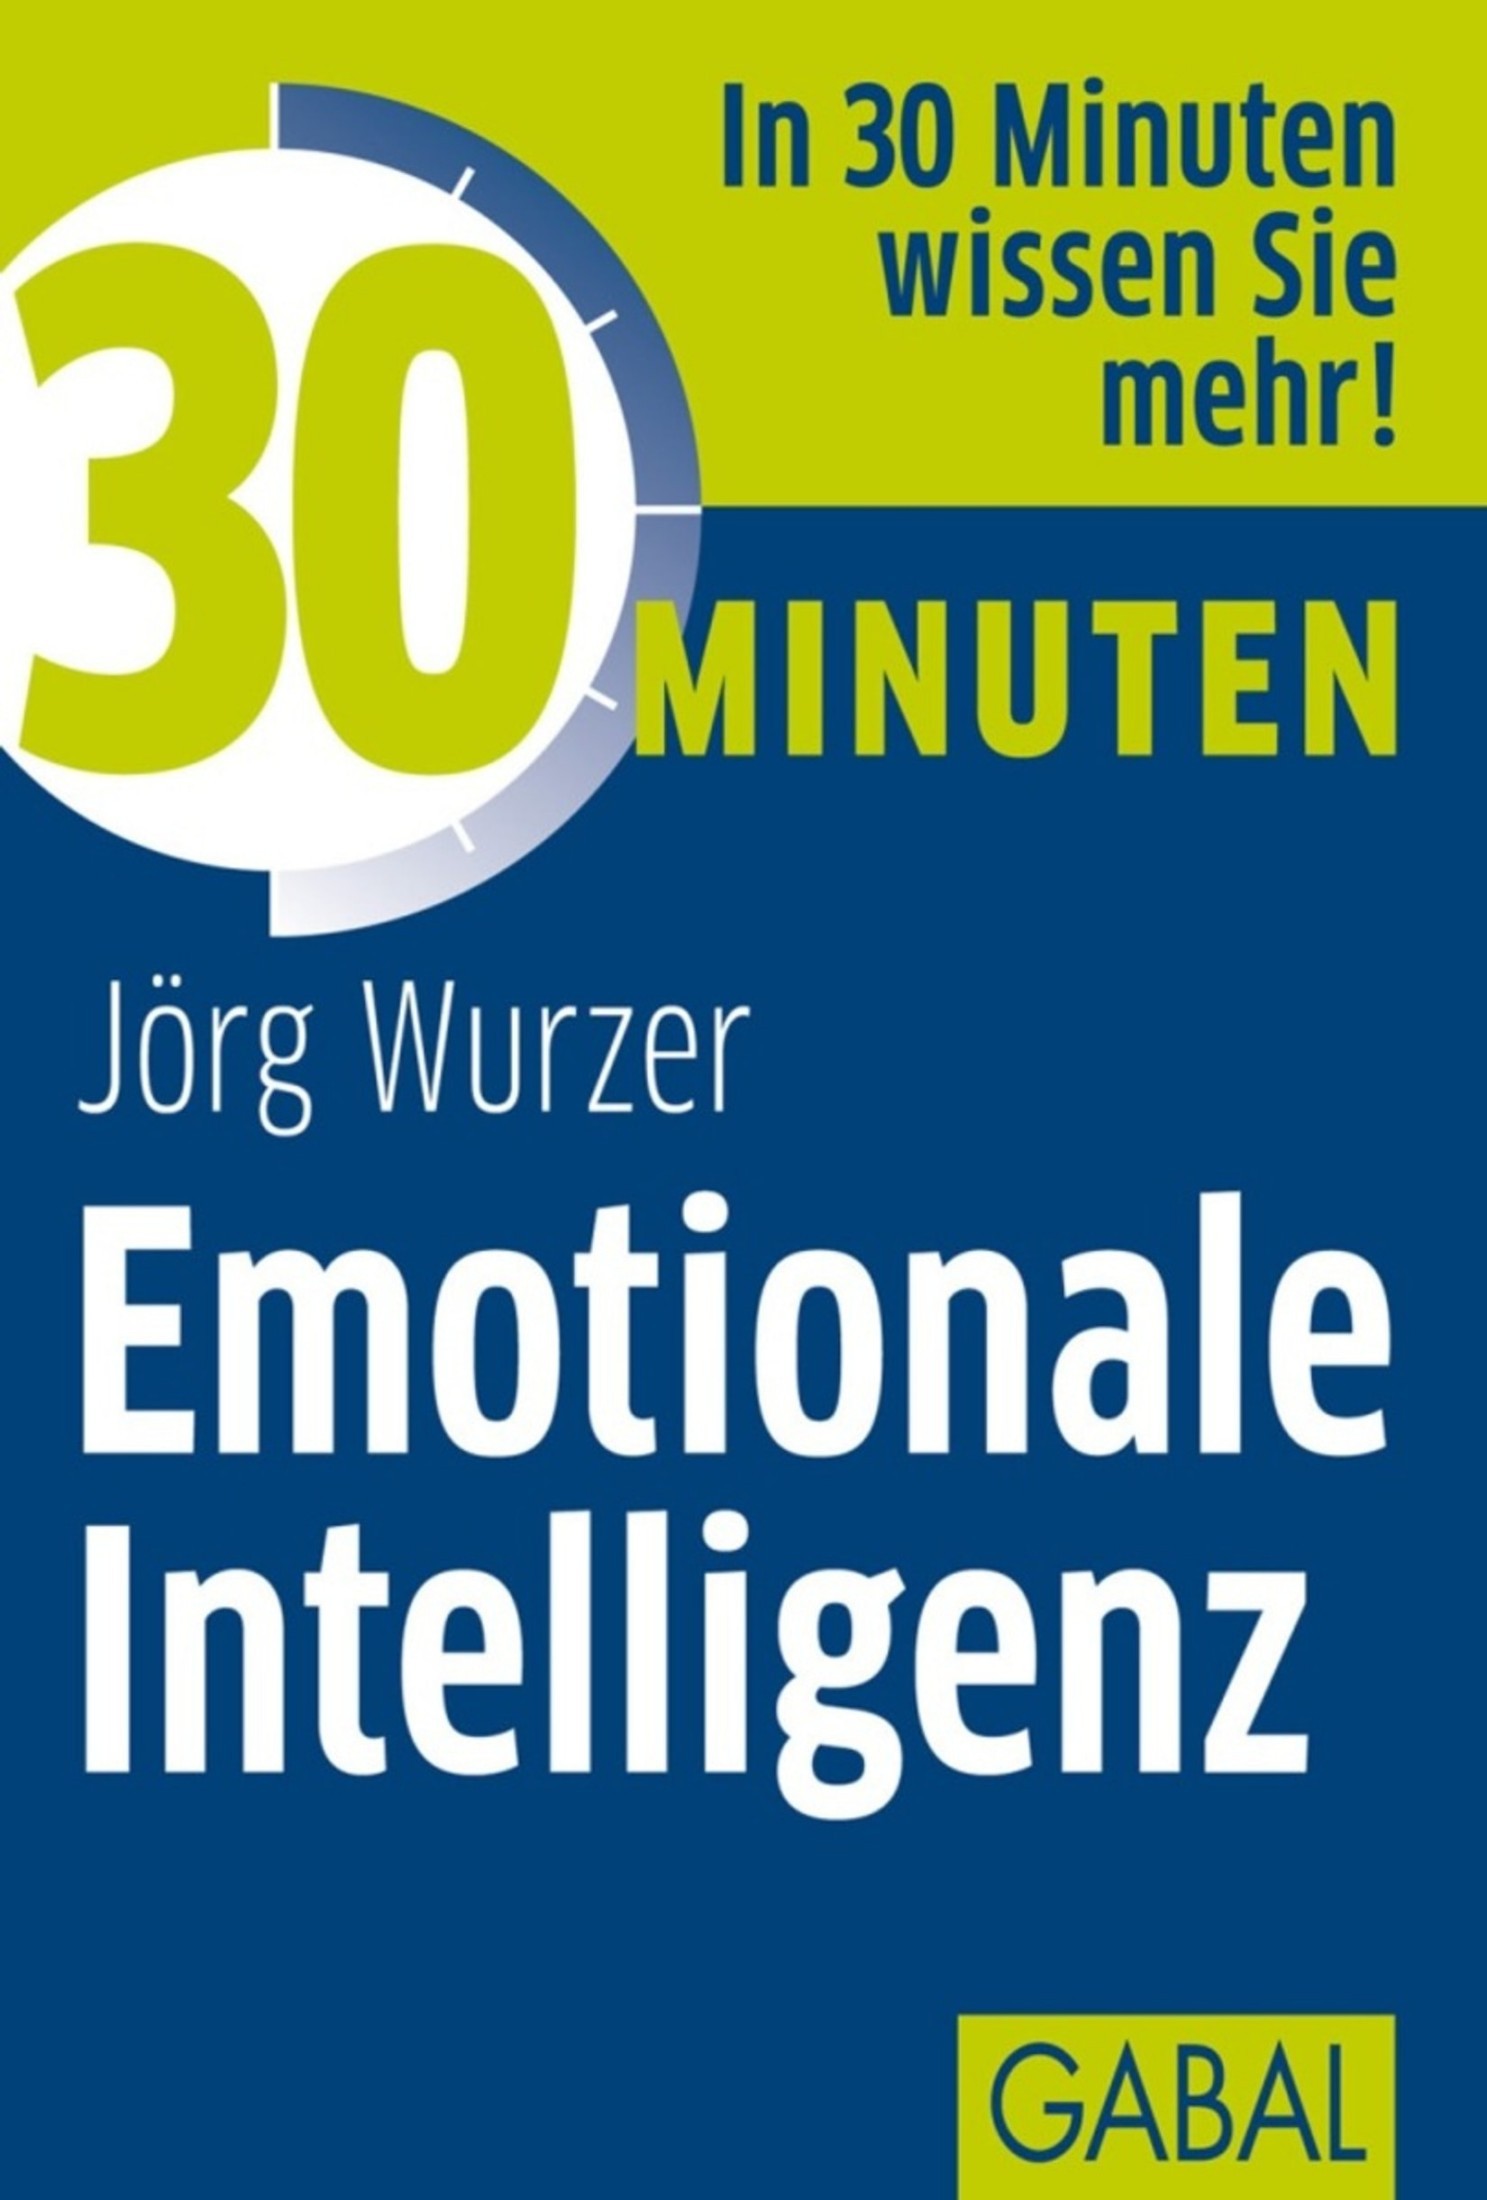 30 Minuten Emotionale Intelligenz